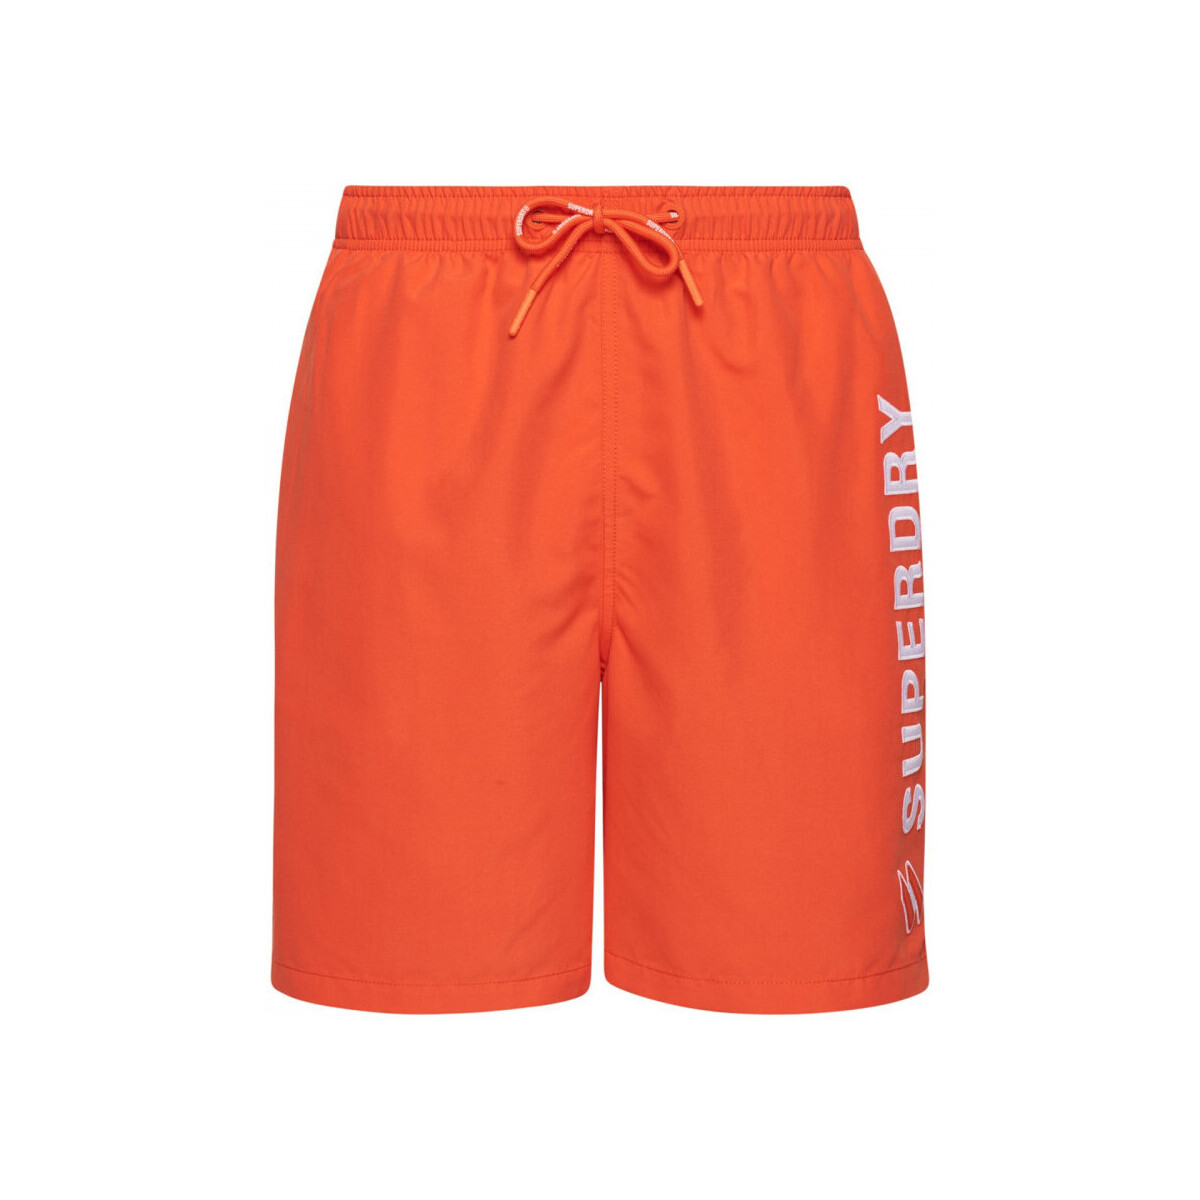 Υφασμάτινα Άνδρας Μαγιώ / shorts για την παραλία Superdry Code applque 19inch Orange